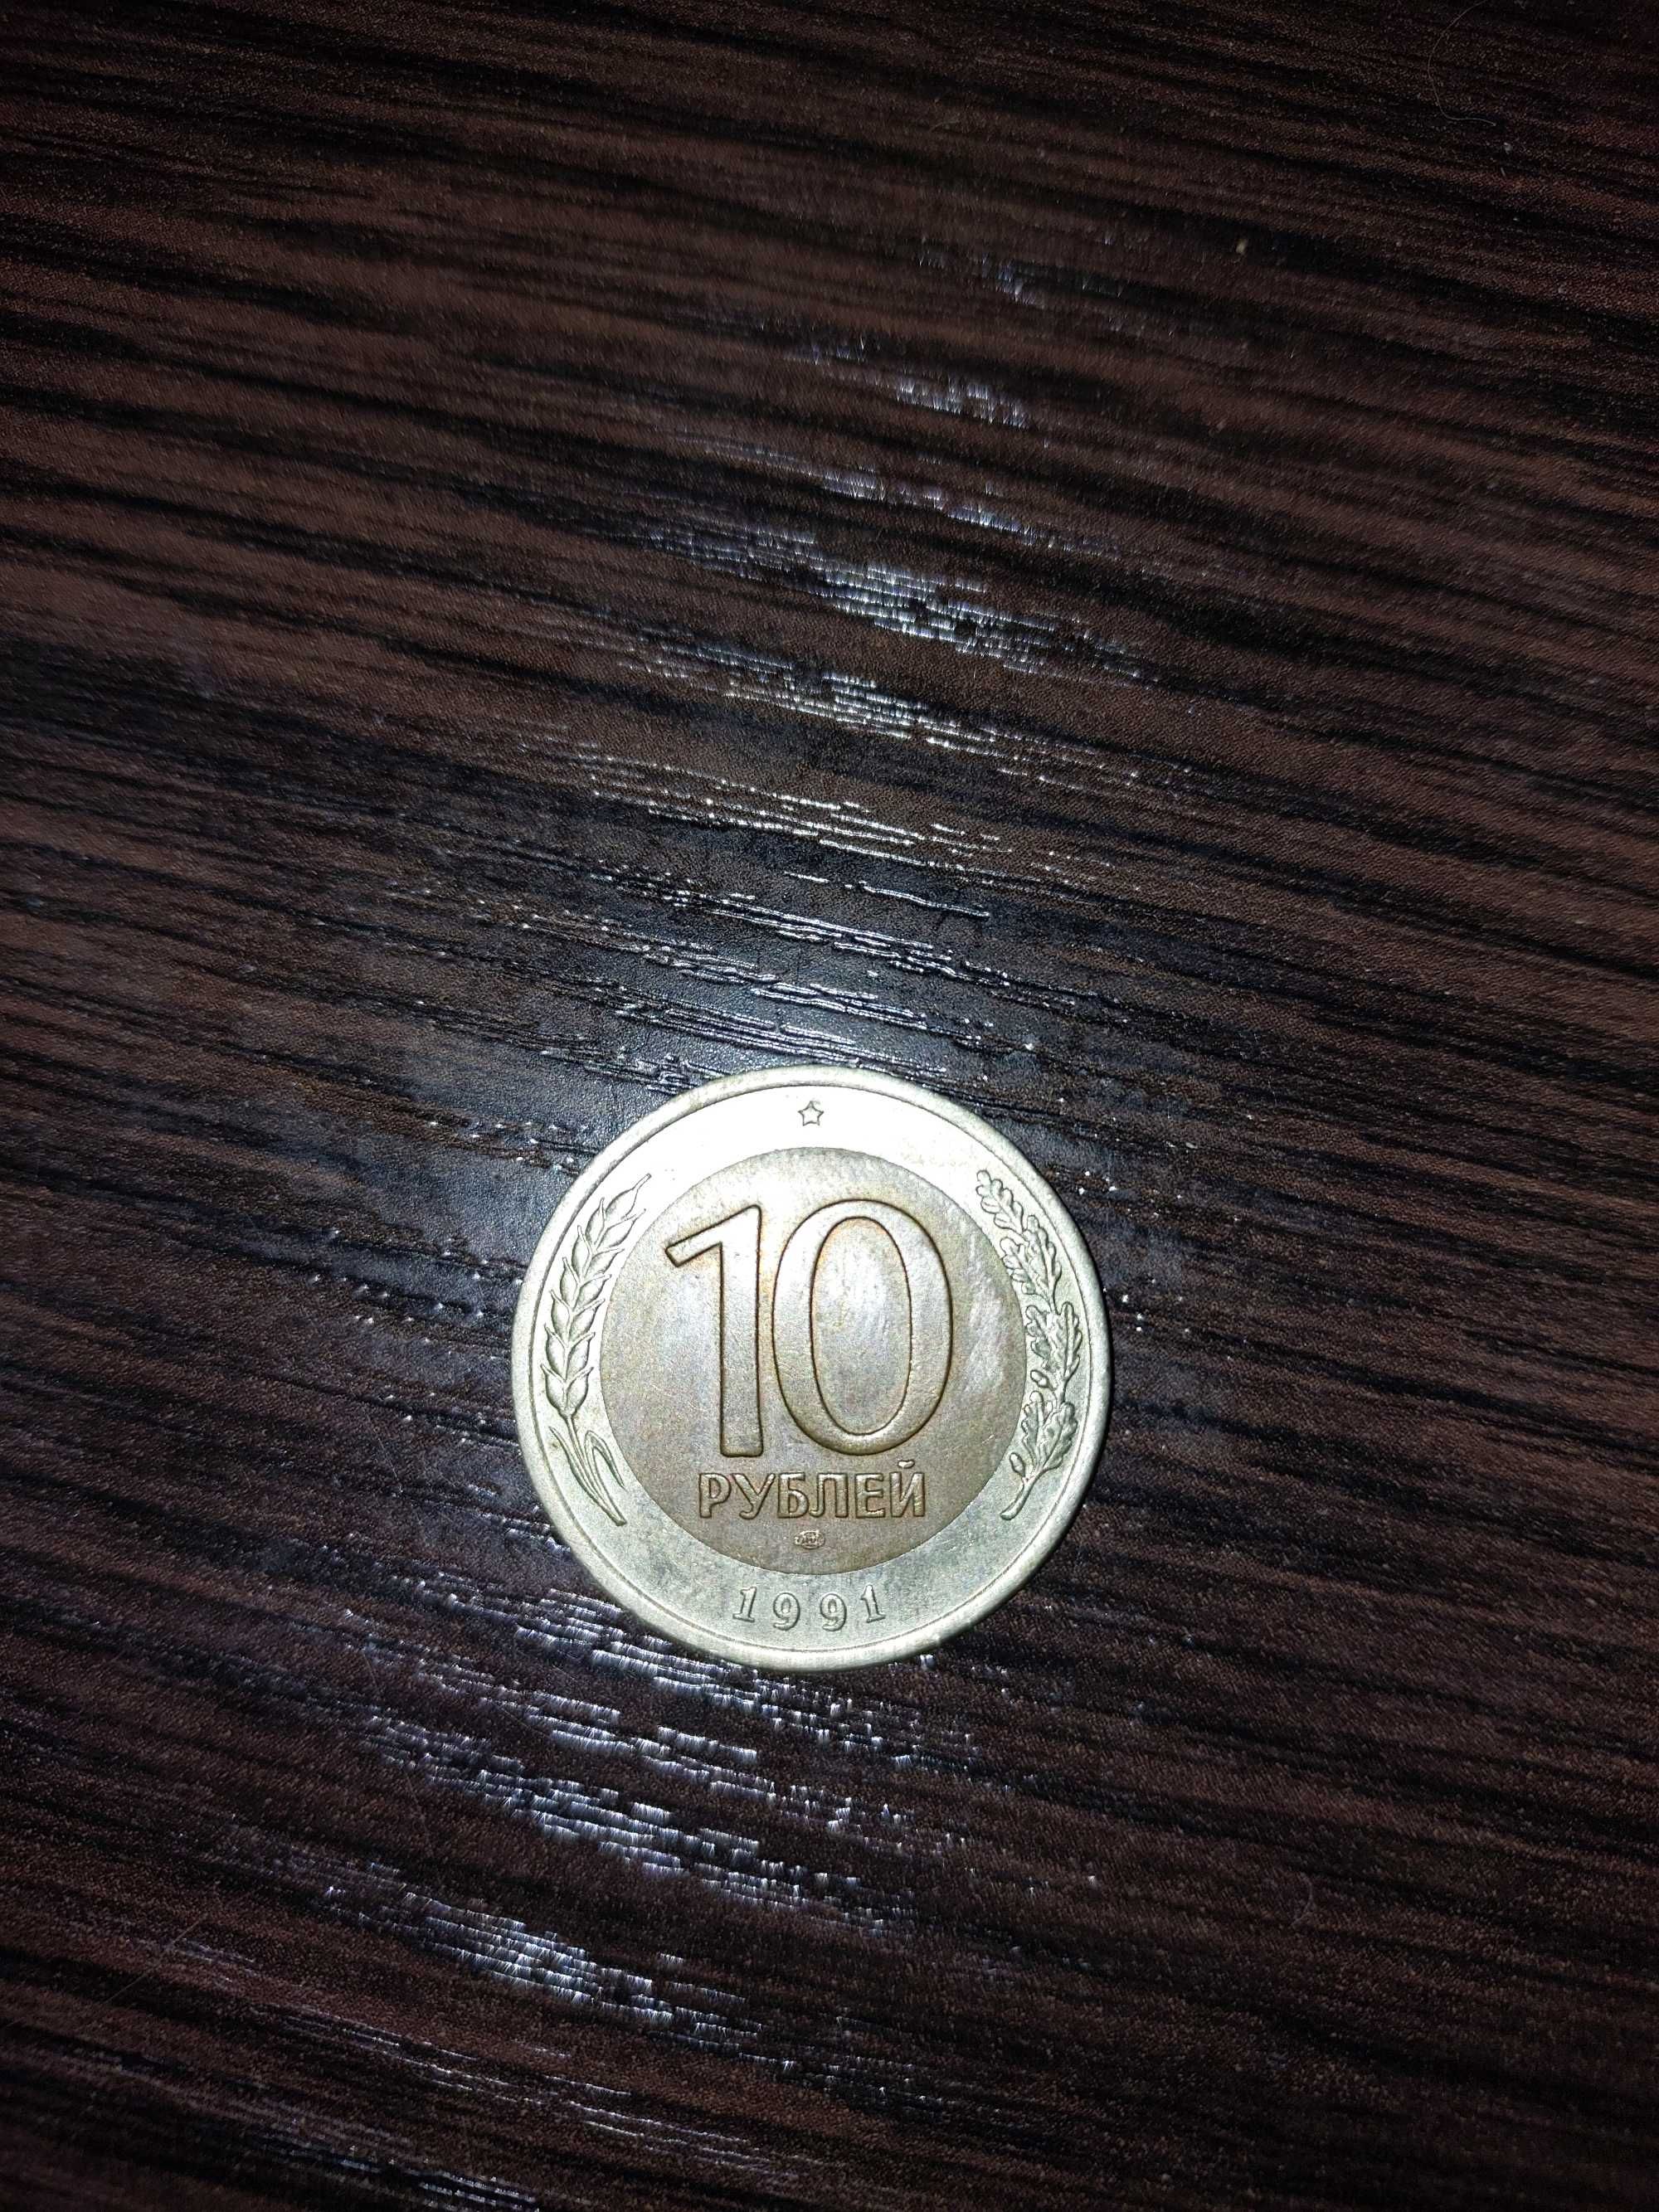 Продам монеты СССР разных годов